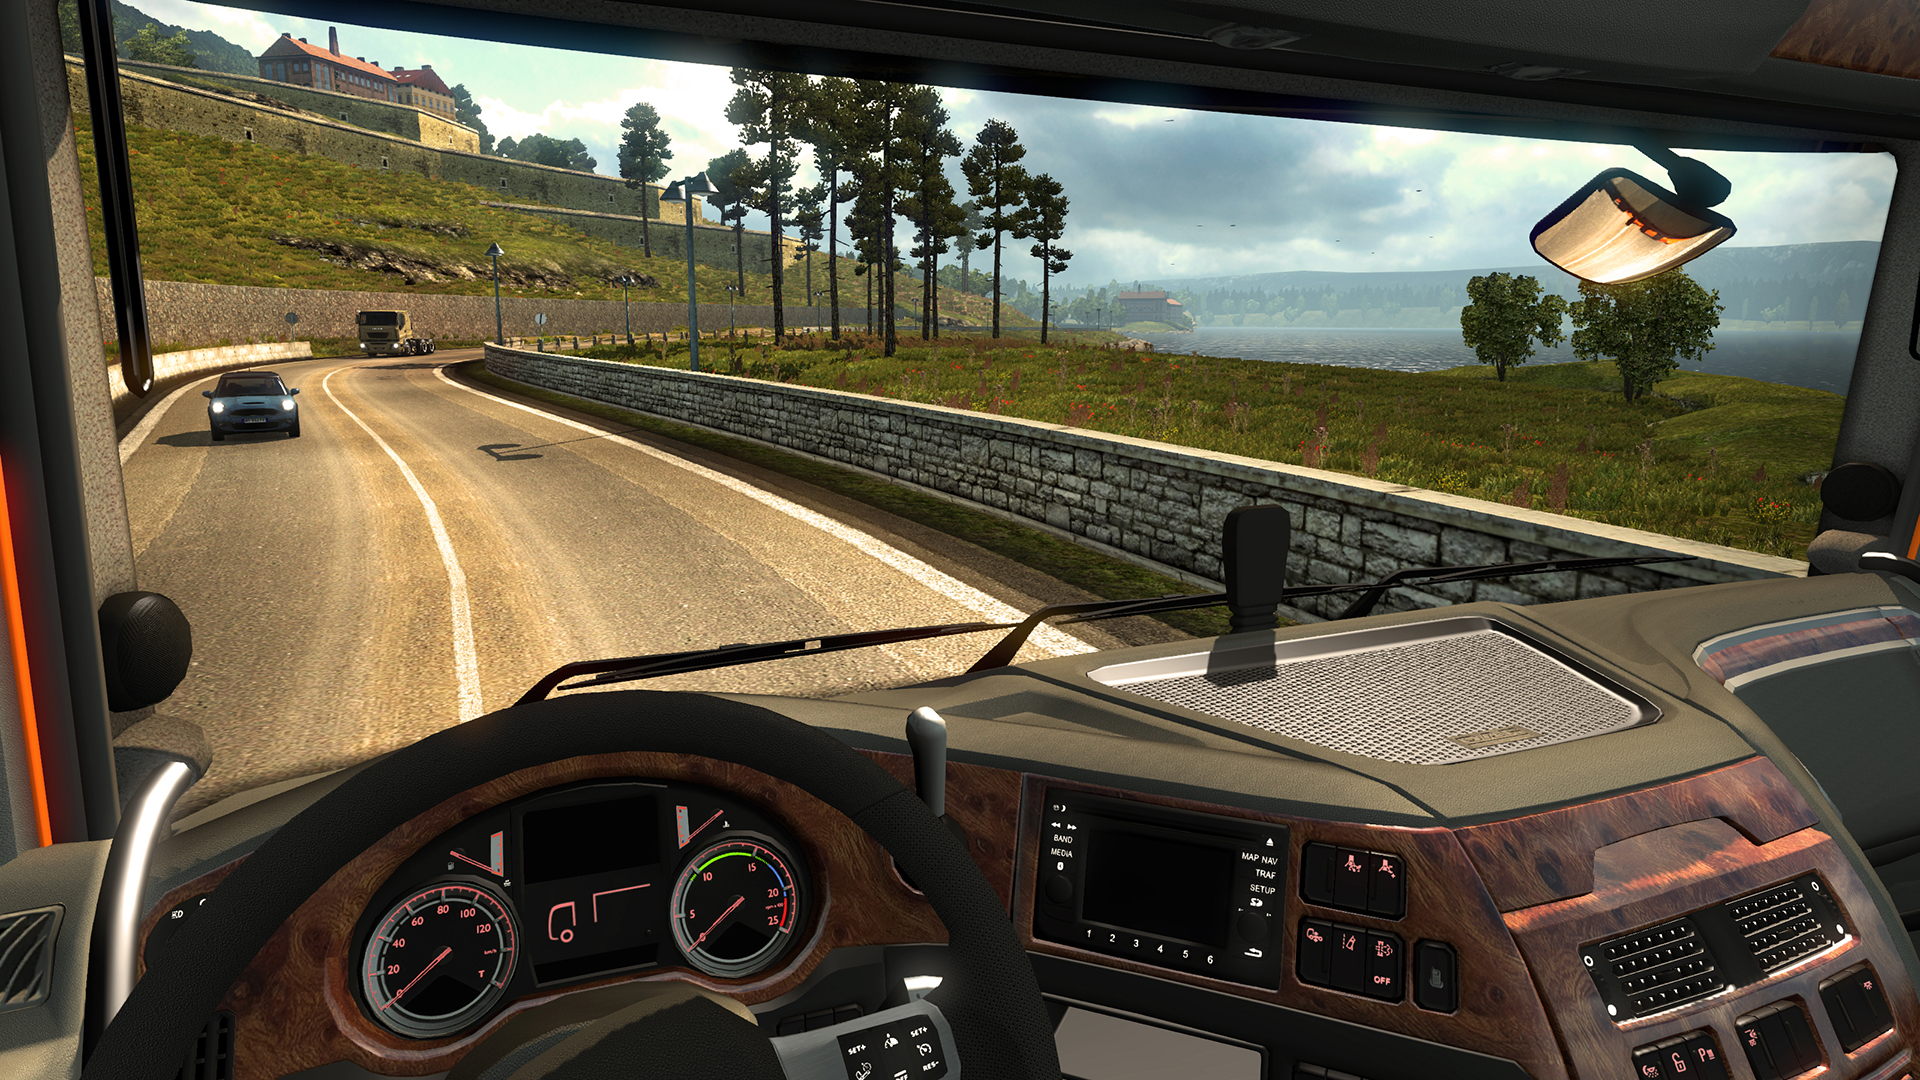 euro truck simulator 2 generator key download